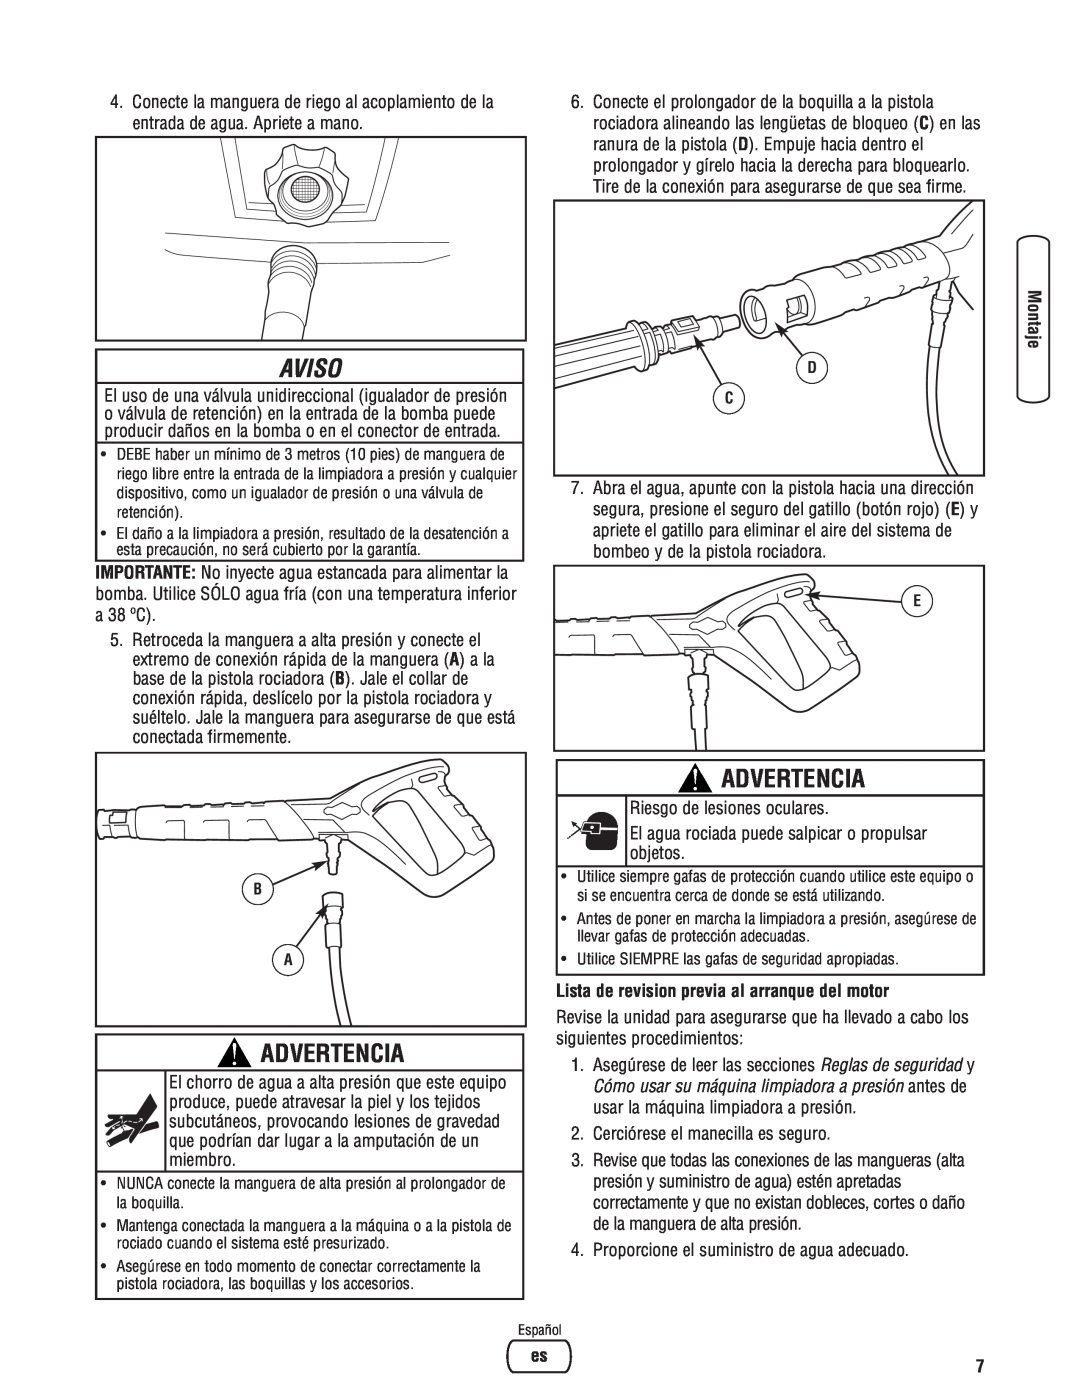 Briggs & Stratton Electric Pressure Washer manual Lista de revision previa al arranque del motor, Aviso, Advertencia 